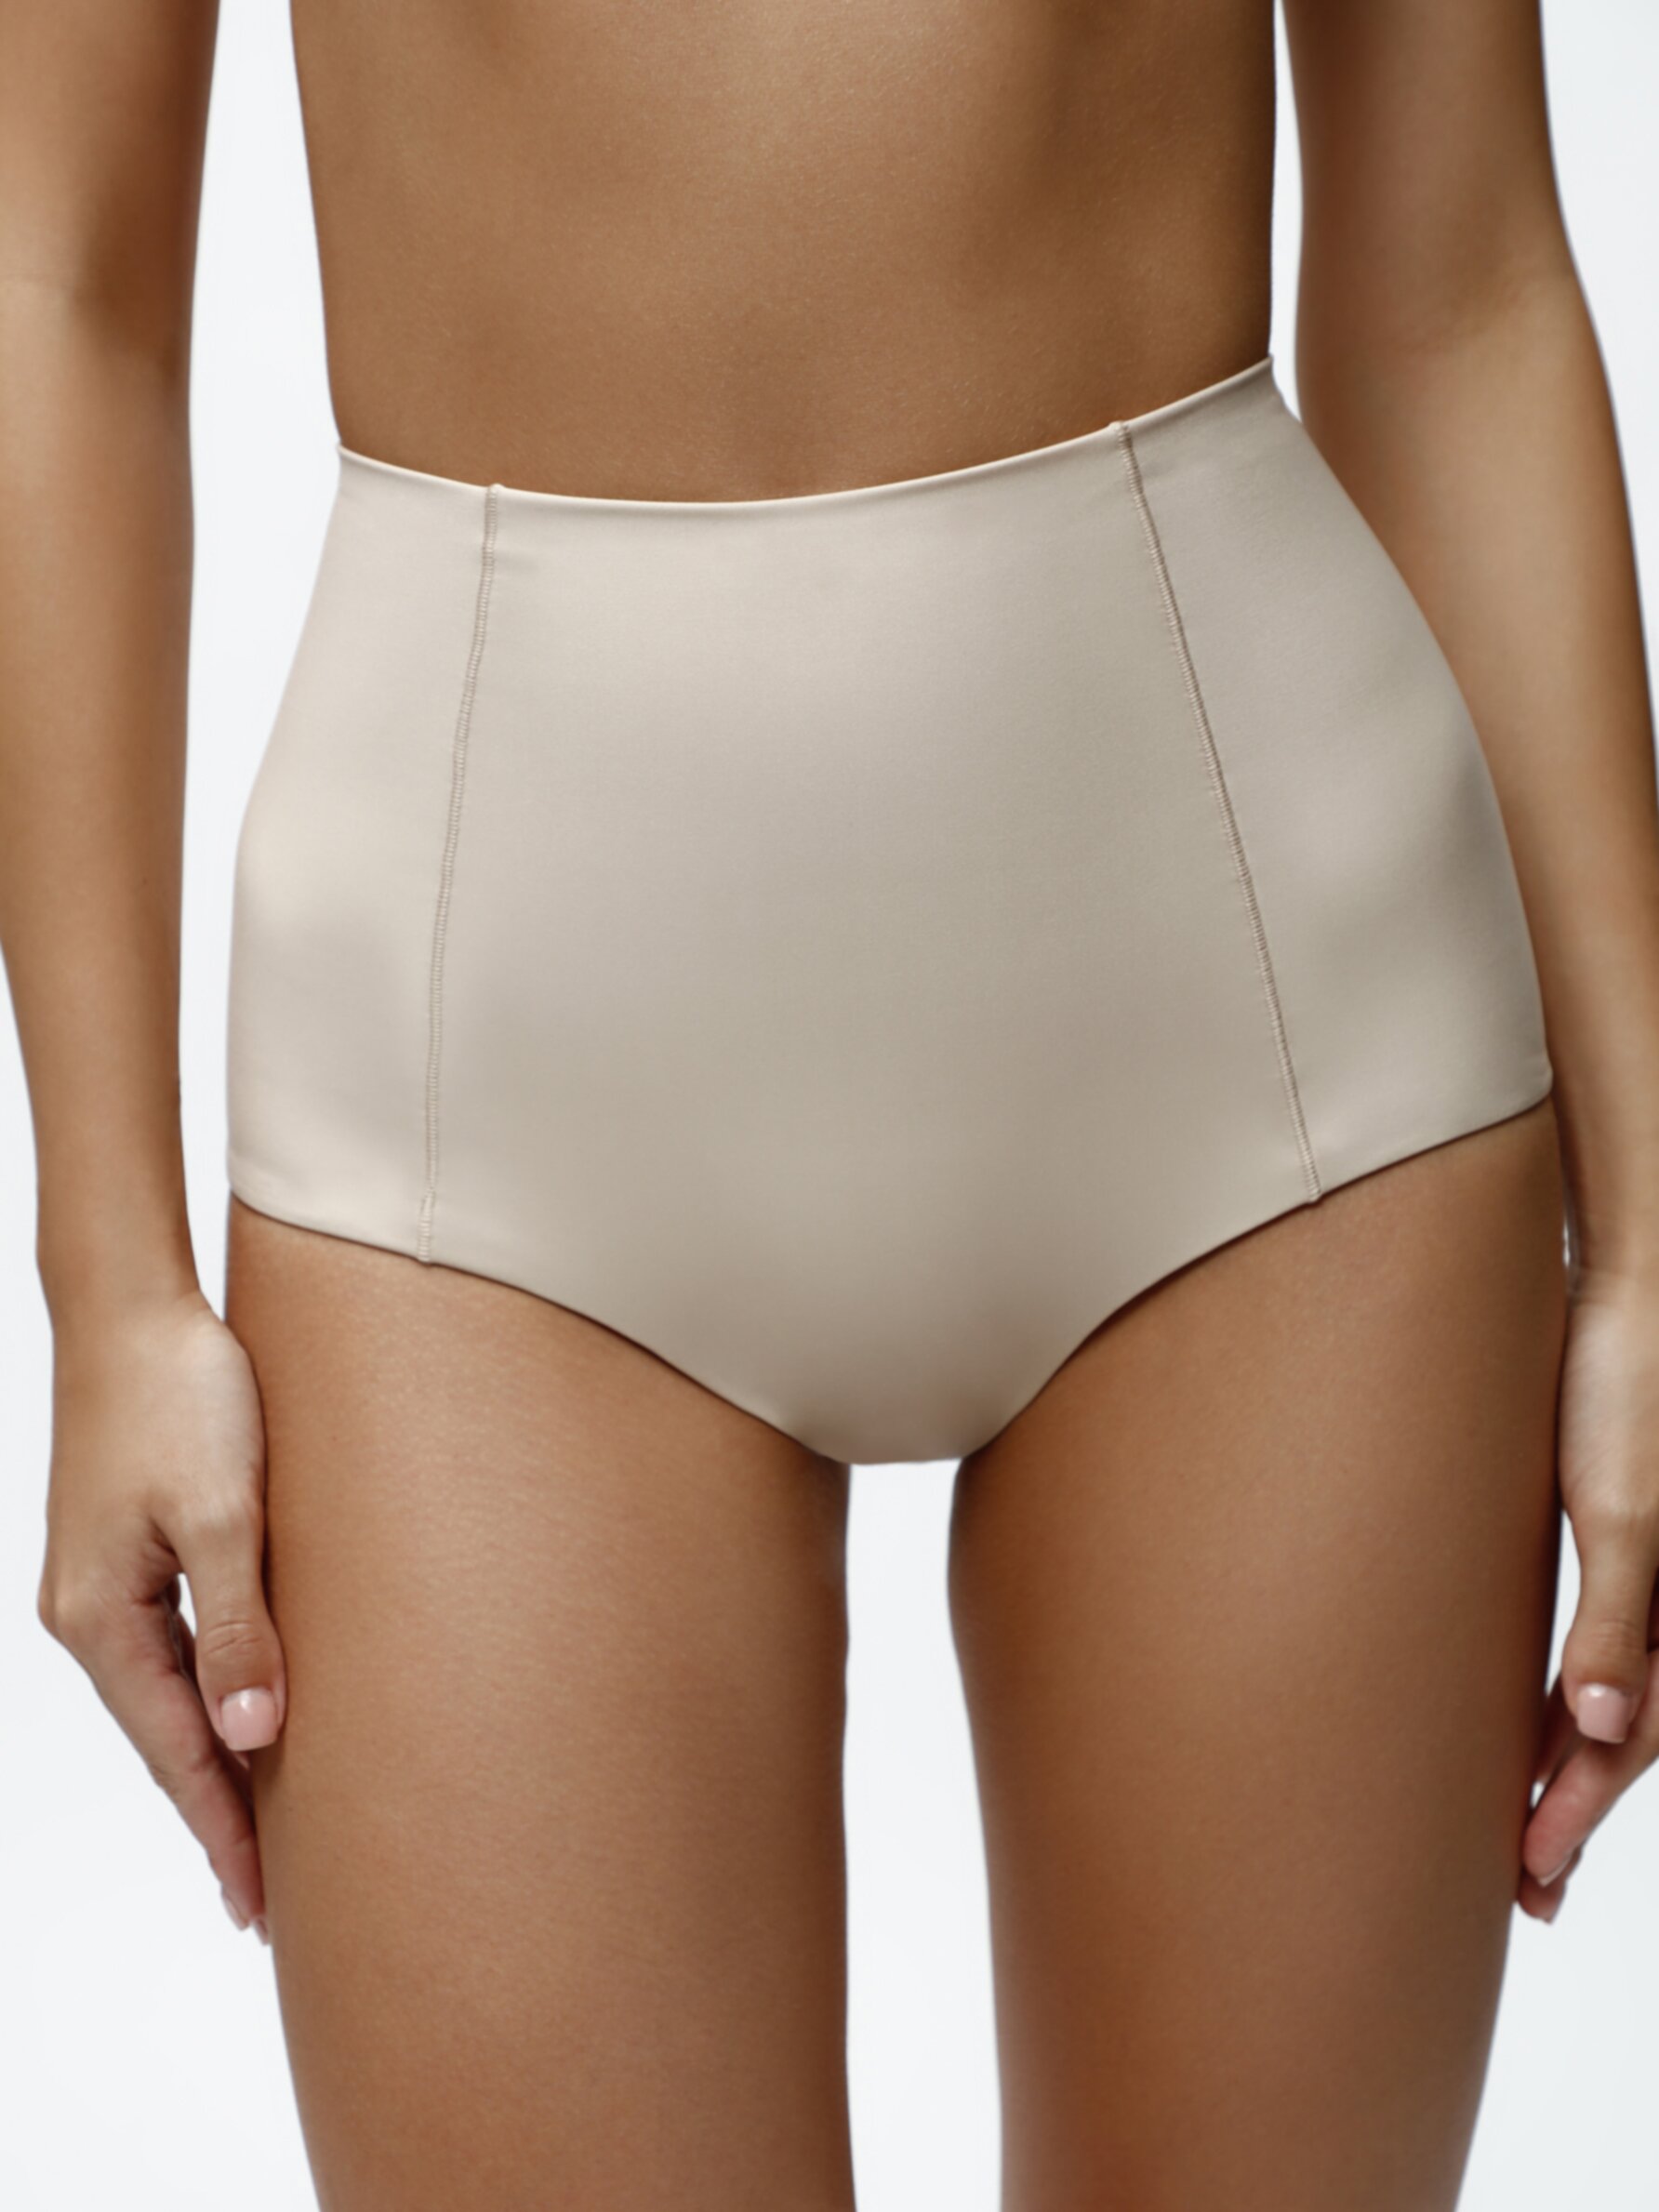 High-waist compression briefs - Briefs - Underwear - CLOTHING - Woman 